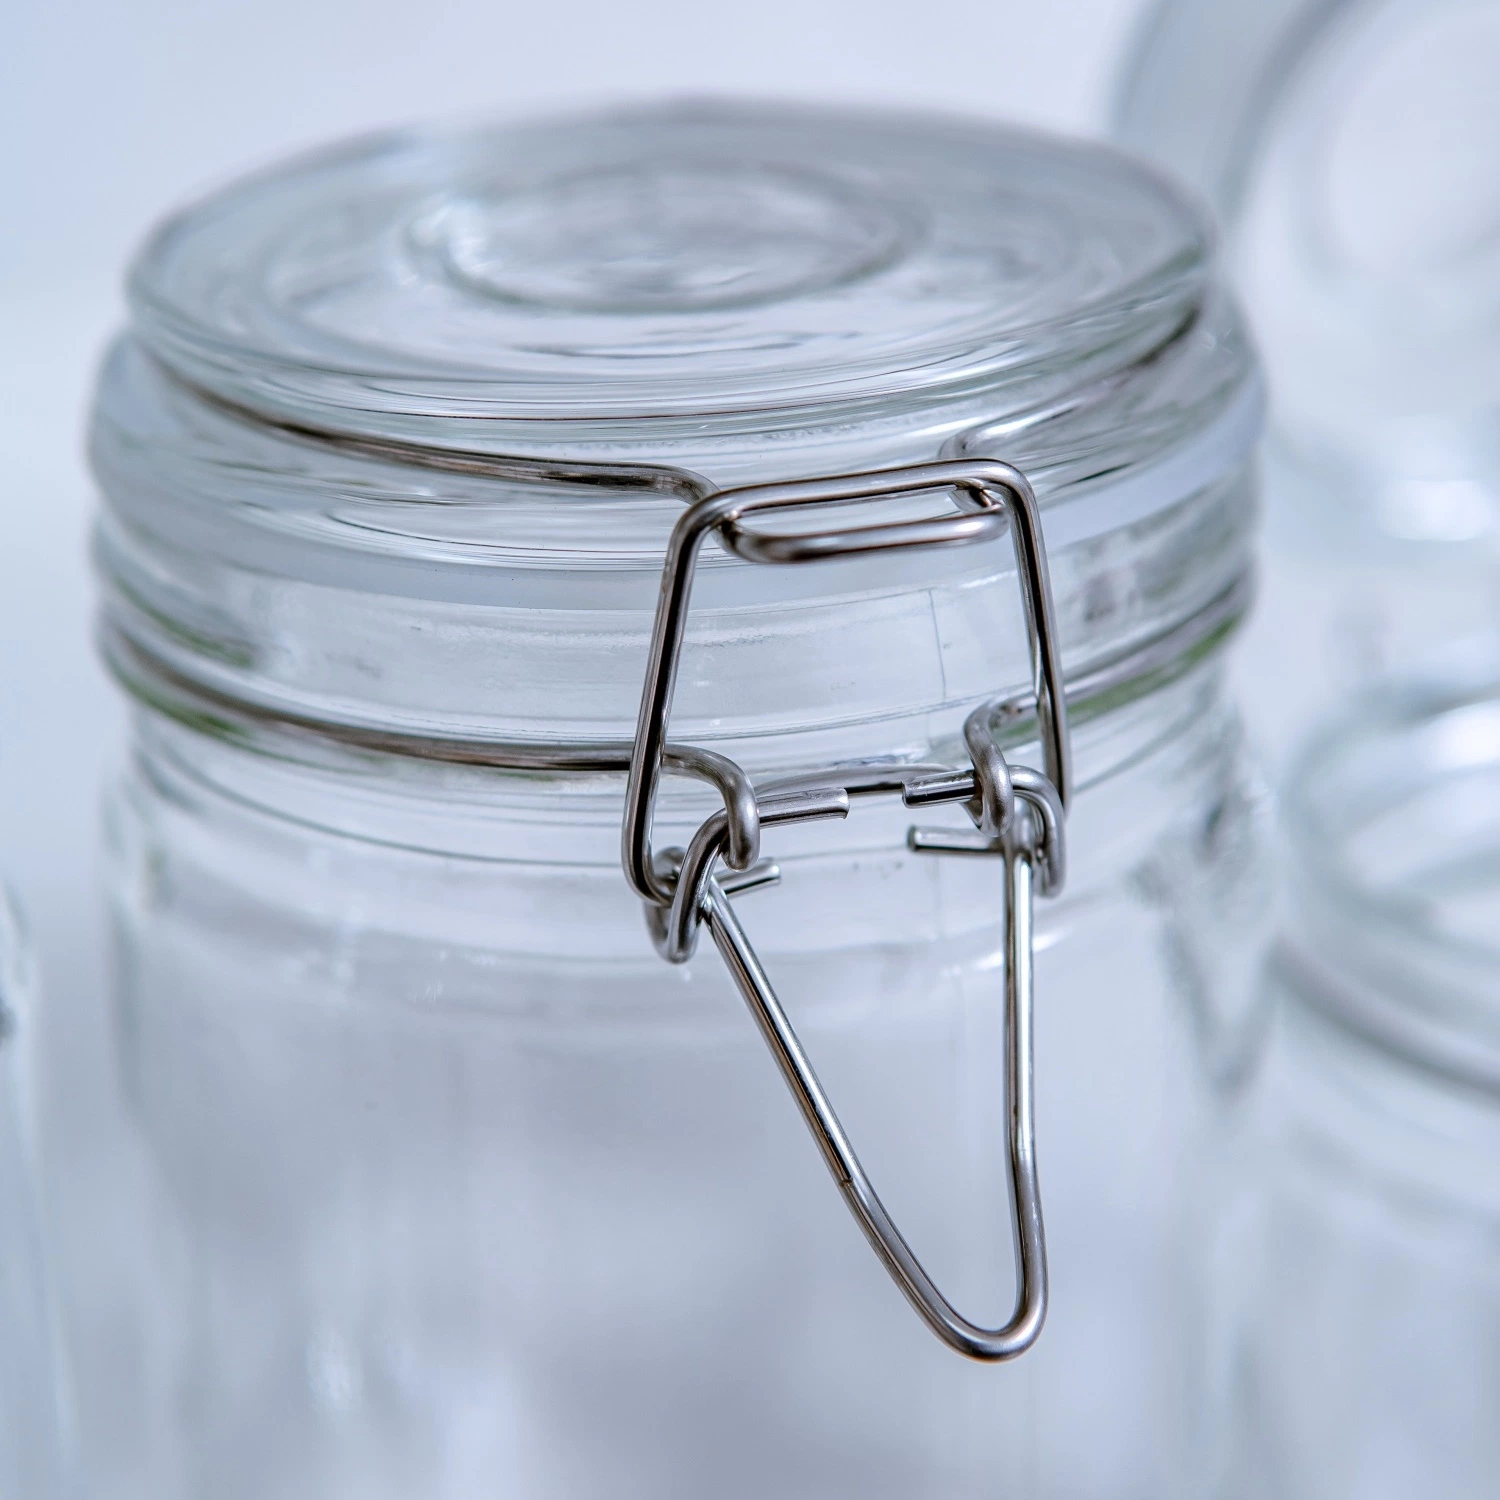 Runde, quadratische, sechseckige Form Glas Lebensmittelverpackungen Gläser, Honig Glas mit Metall / Kunststoff Deckel für die Verpackung Honig, Marmelade Gläser